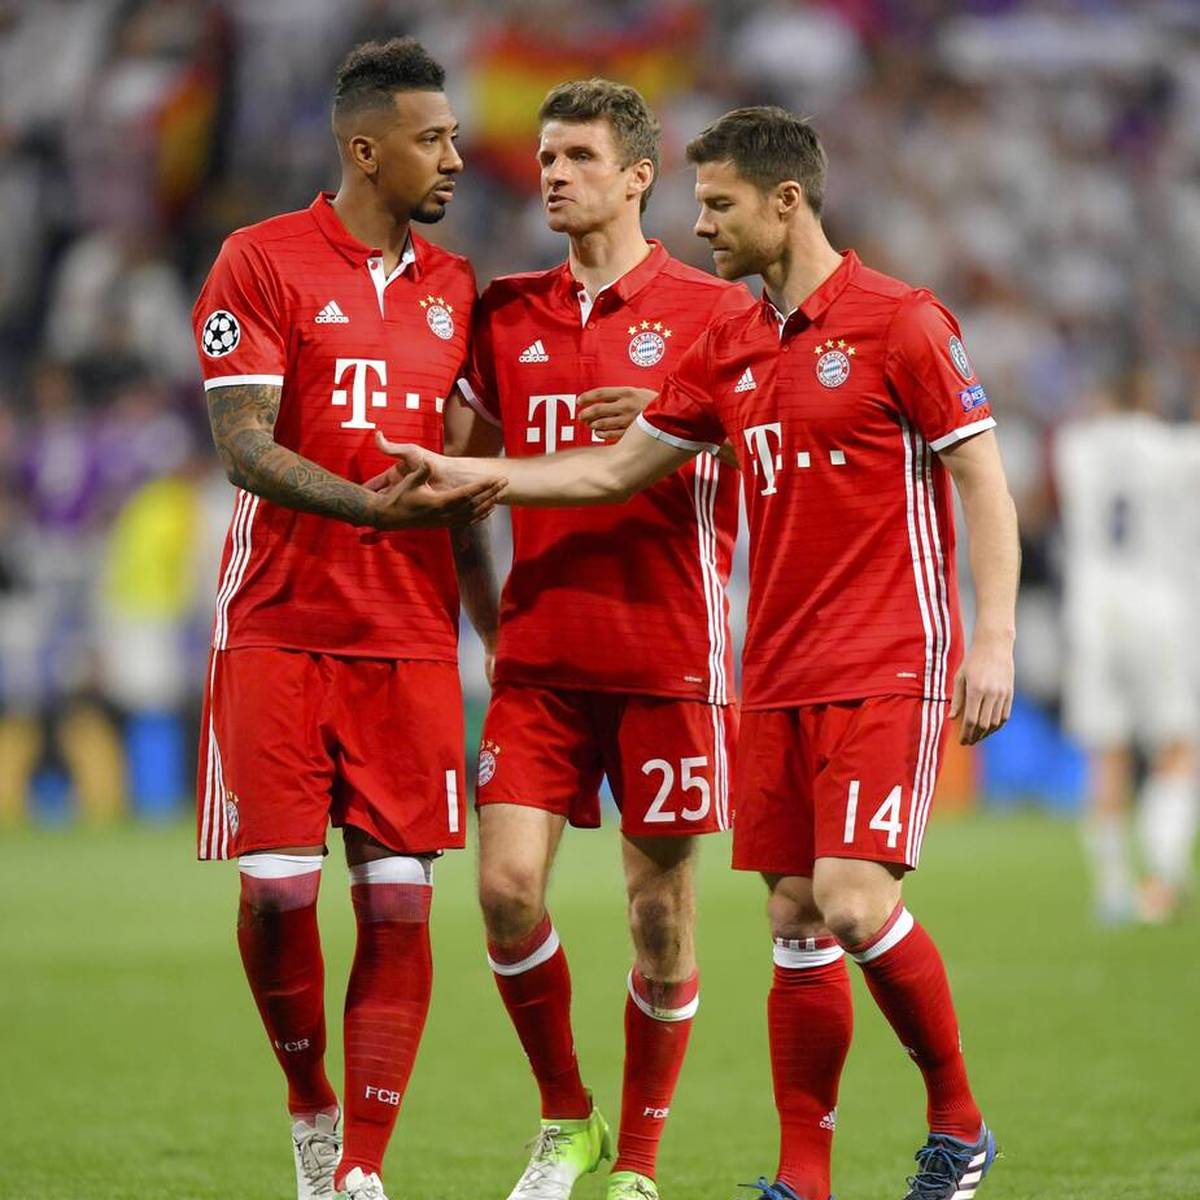 Jérôme Boateng freut sich über die Rückkehr von Xabi Alonso in die Bundesliga. Der Ex-Nationalspieler spricht bei SPORT1 über den Wechsel des Spaniers zu Bayer Leverkusen, mit dem er drei Jahre beim FC Bayern zusammenspielte.